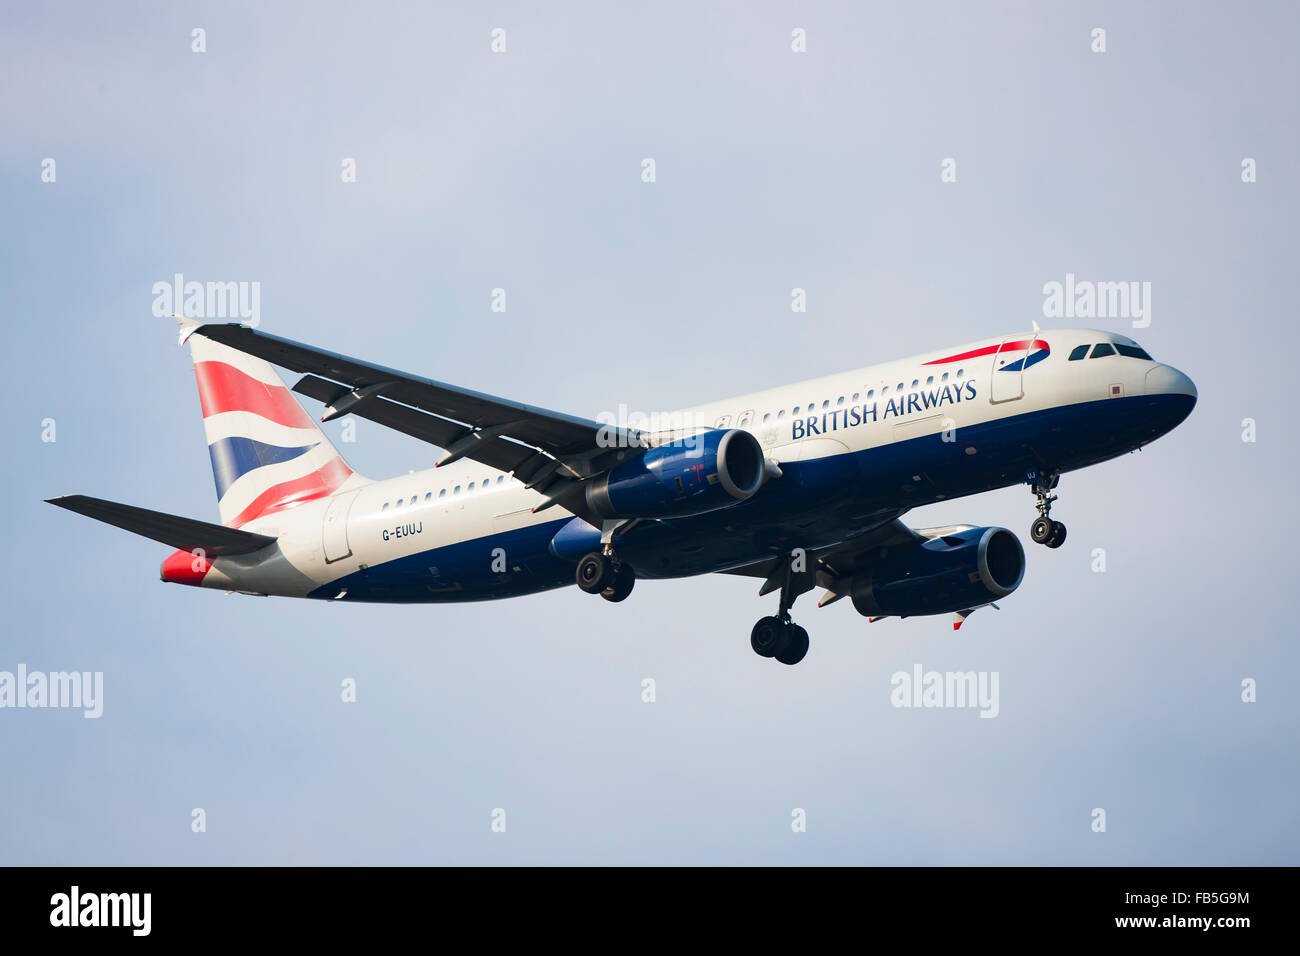 British Airways Airliner Stock Photo